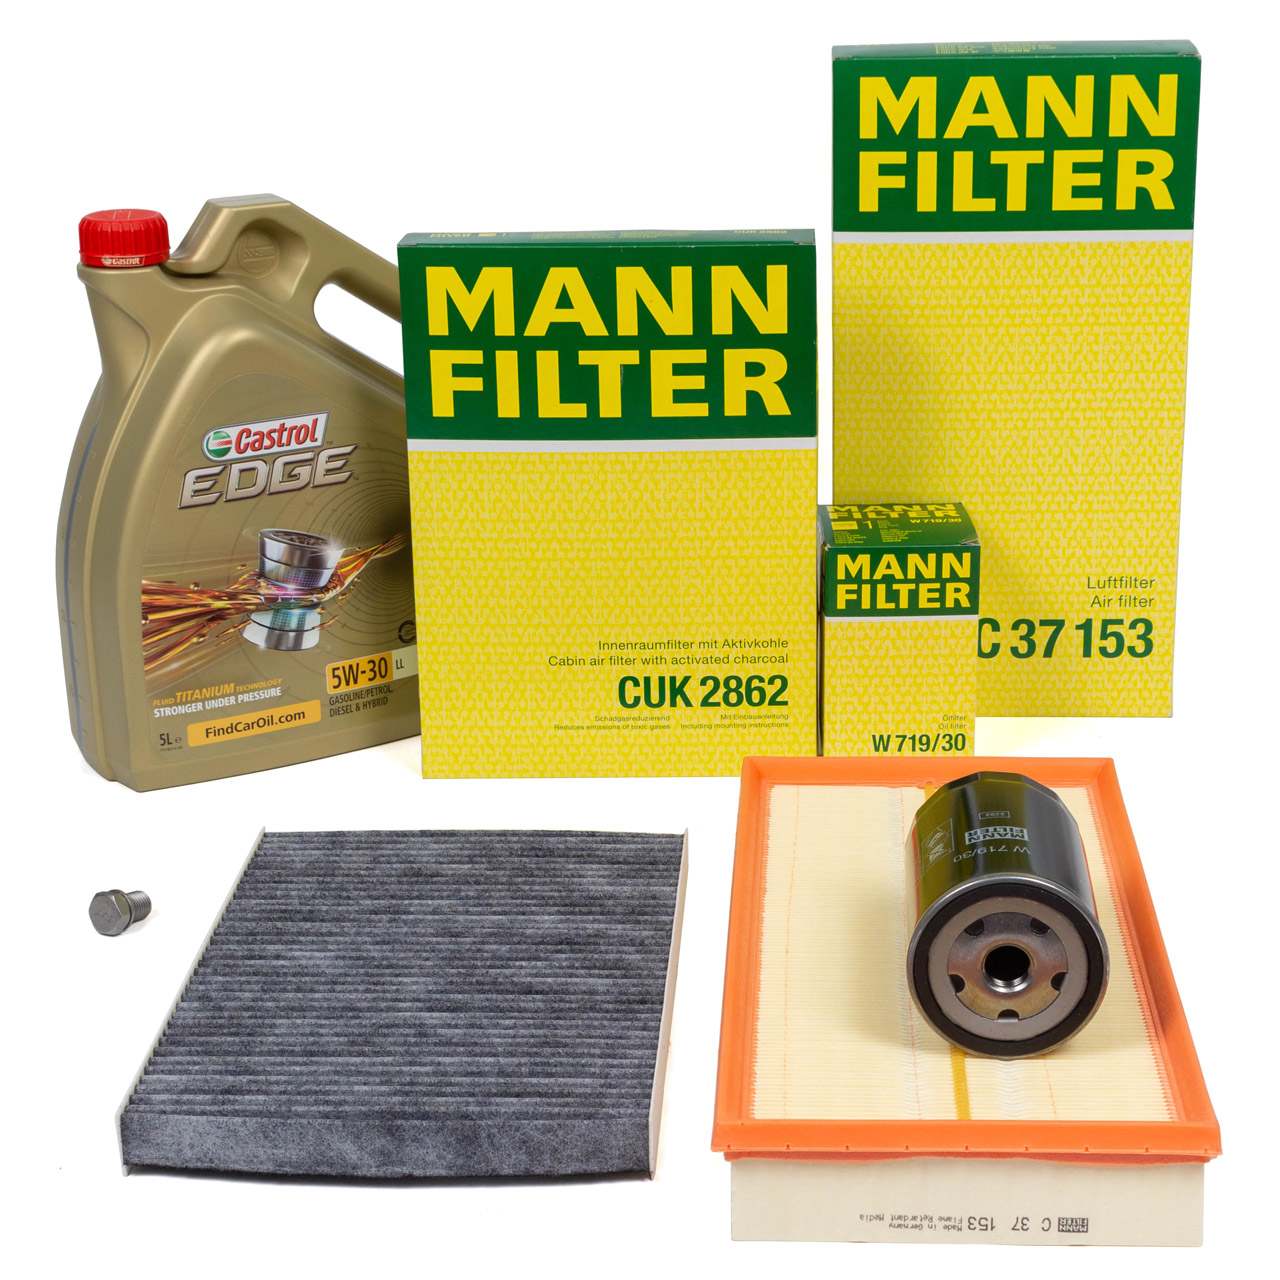 MANN Filterset 3-tlg + 5L CASTROL 5W30 Motoröl VW Golf 4 AUDI A3 8L1 TT 8N 1.6 1.8 / T 2.0